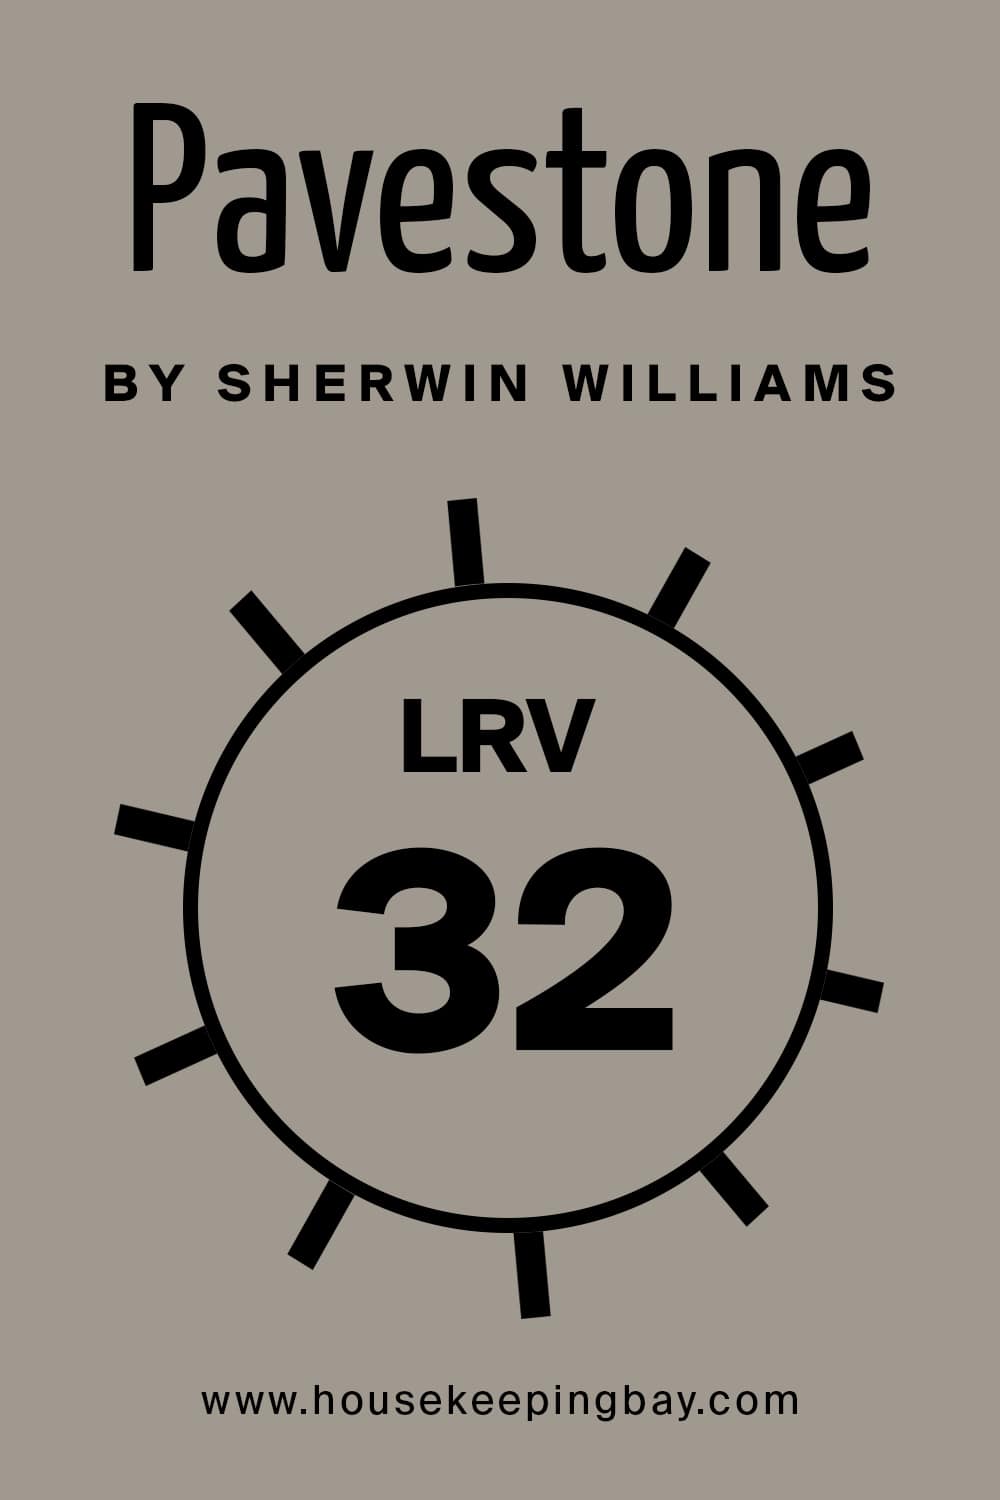 Pavestone by Sherwin Williams. LRV – 32